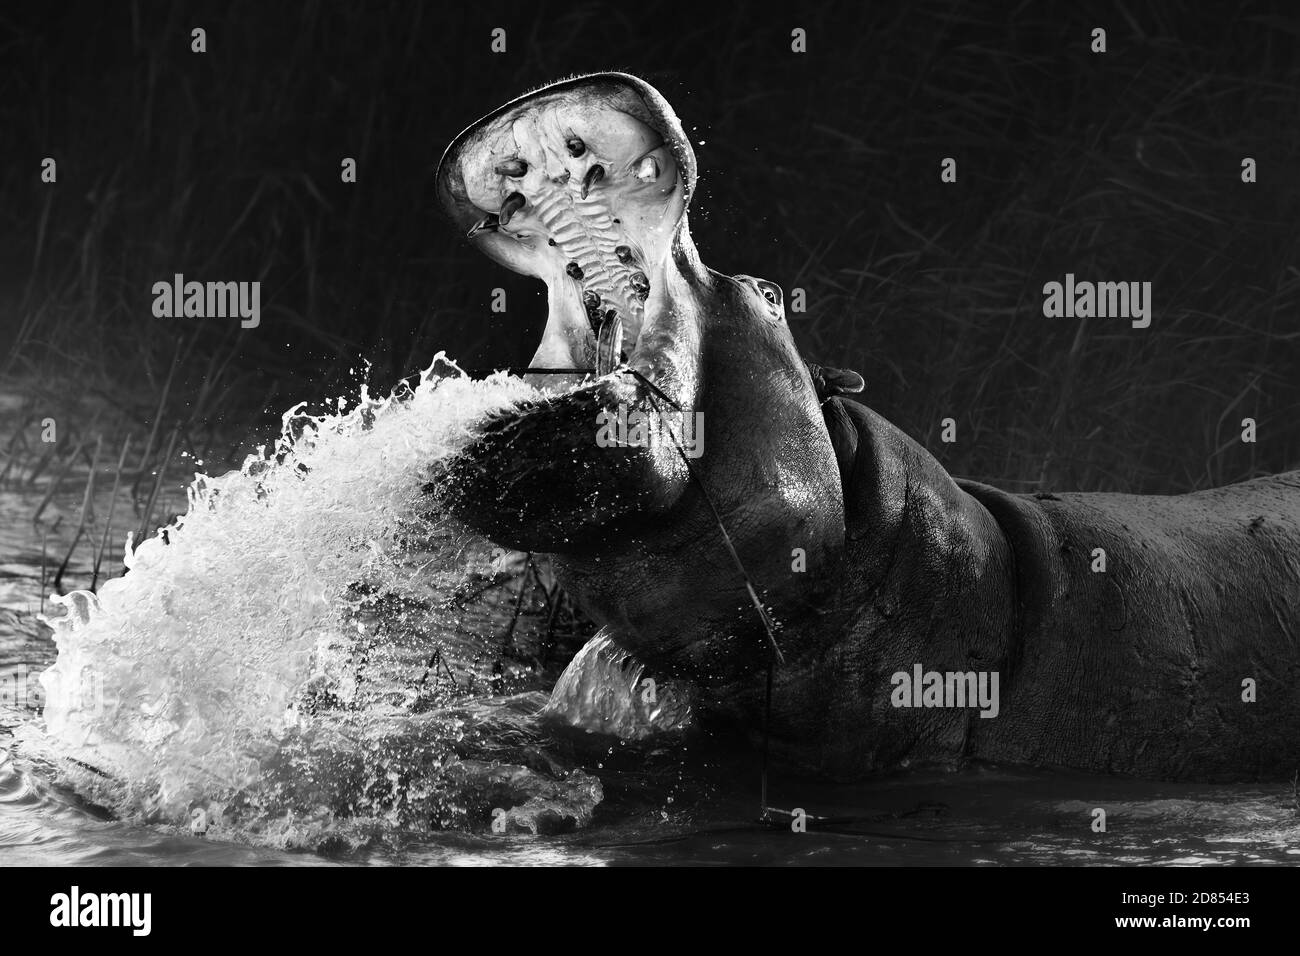 Wütend Nilpferd, Hippo zeigt Dominanz mit einem breiten offenen Mund, während Spritzwasser in schwarz und weiß. Bildende Kunst. Hippopotamus amphibius. Stockfoto